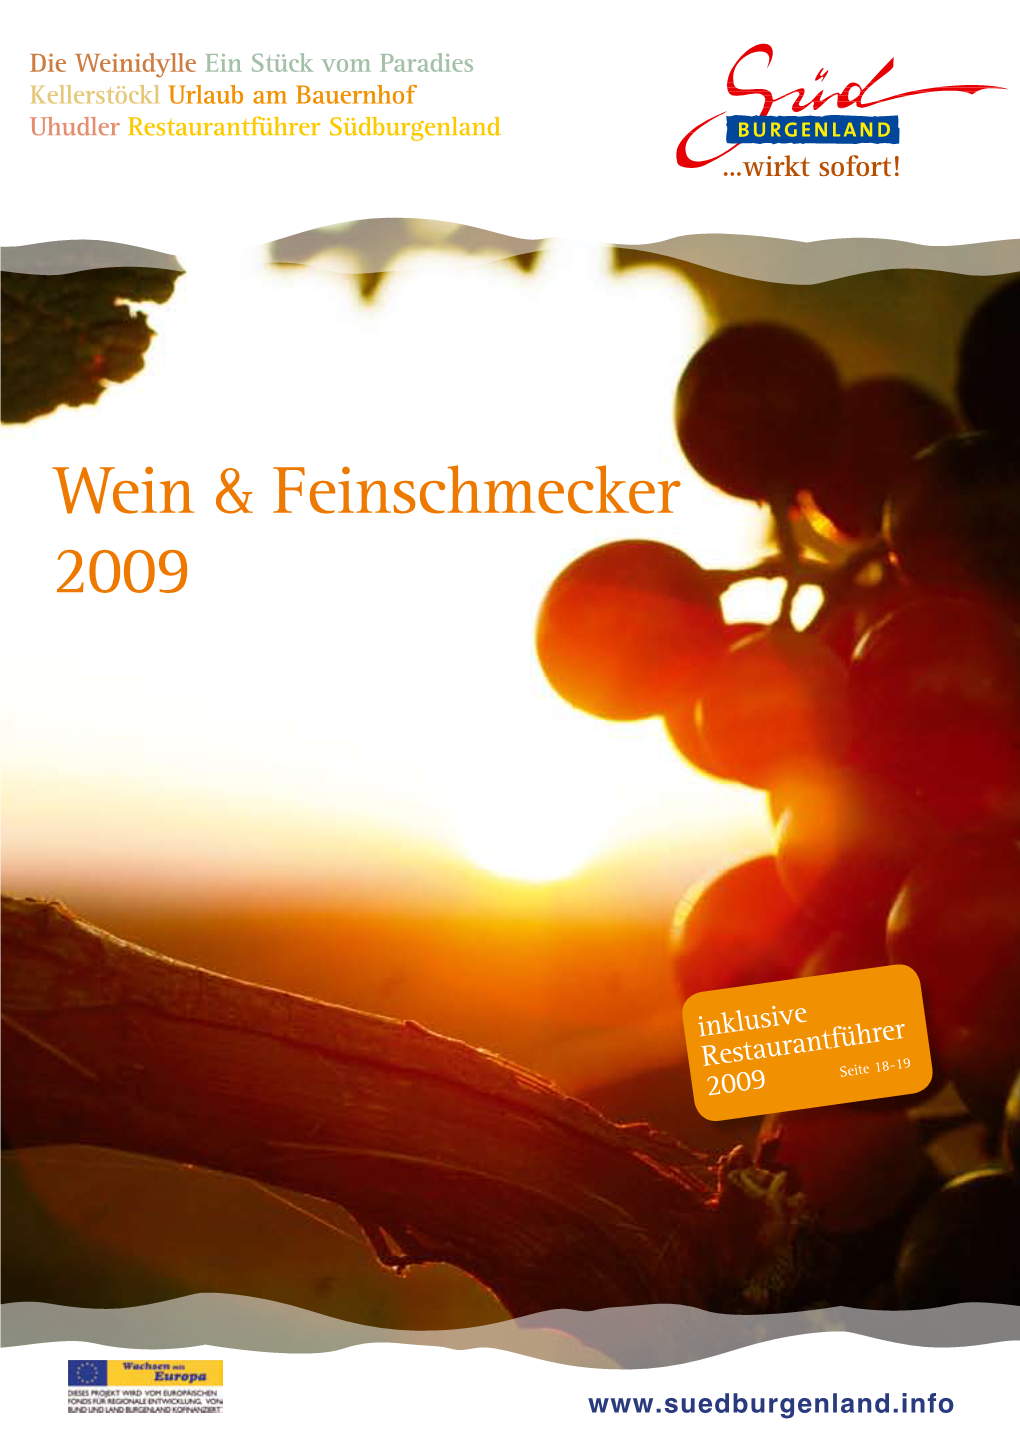 Wein & Feinschmecker 2009